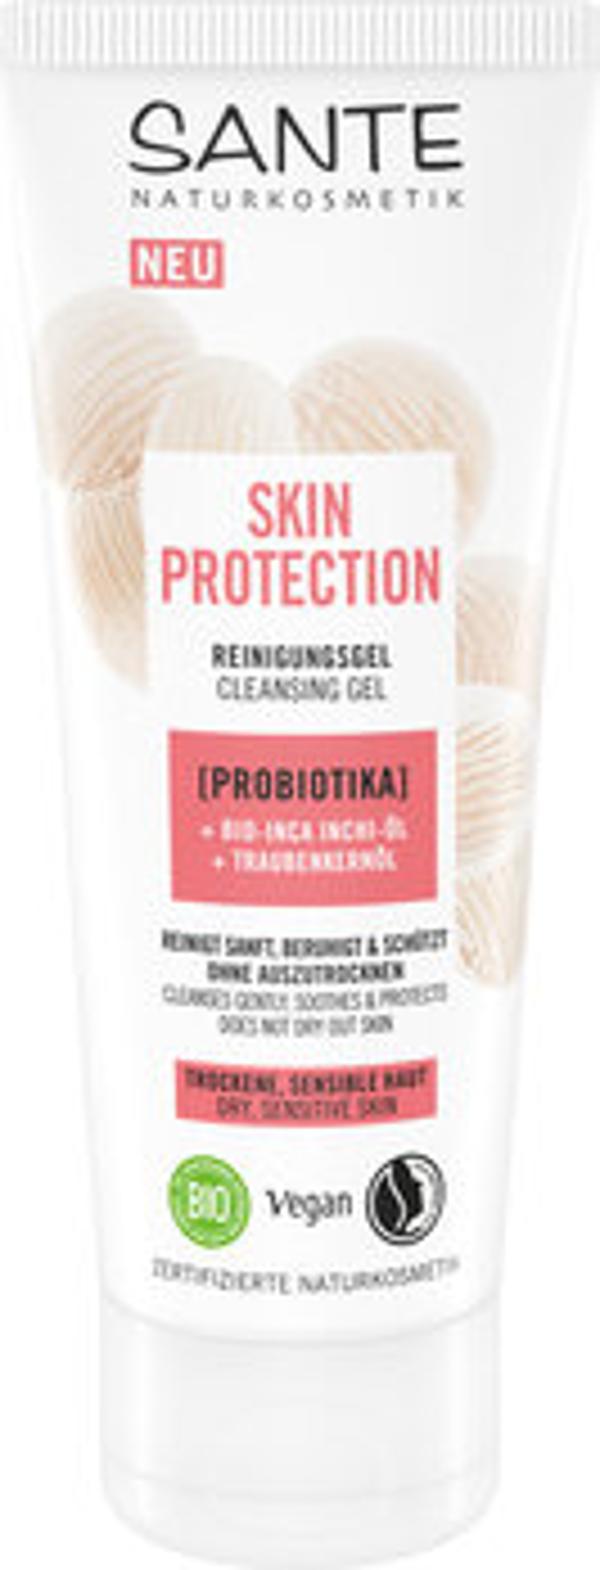 Produktfoto zu Skin Protection Reinigungsgel Probiotika 100ml